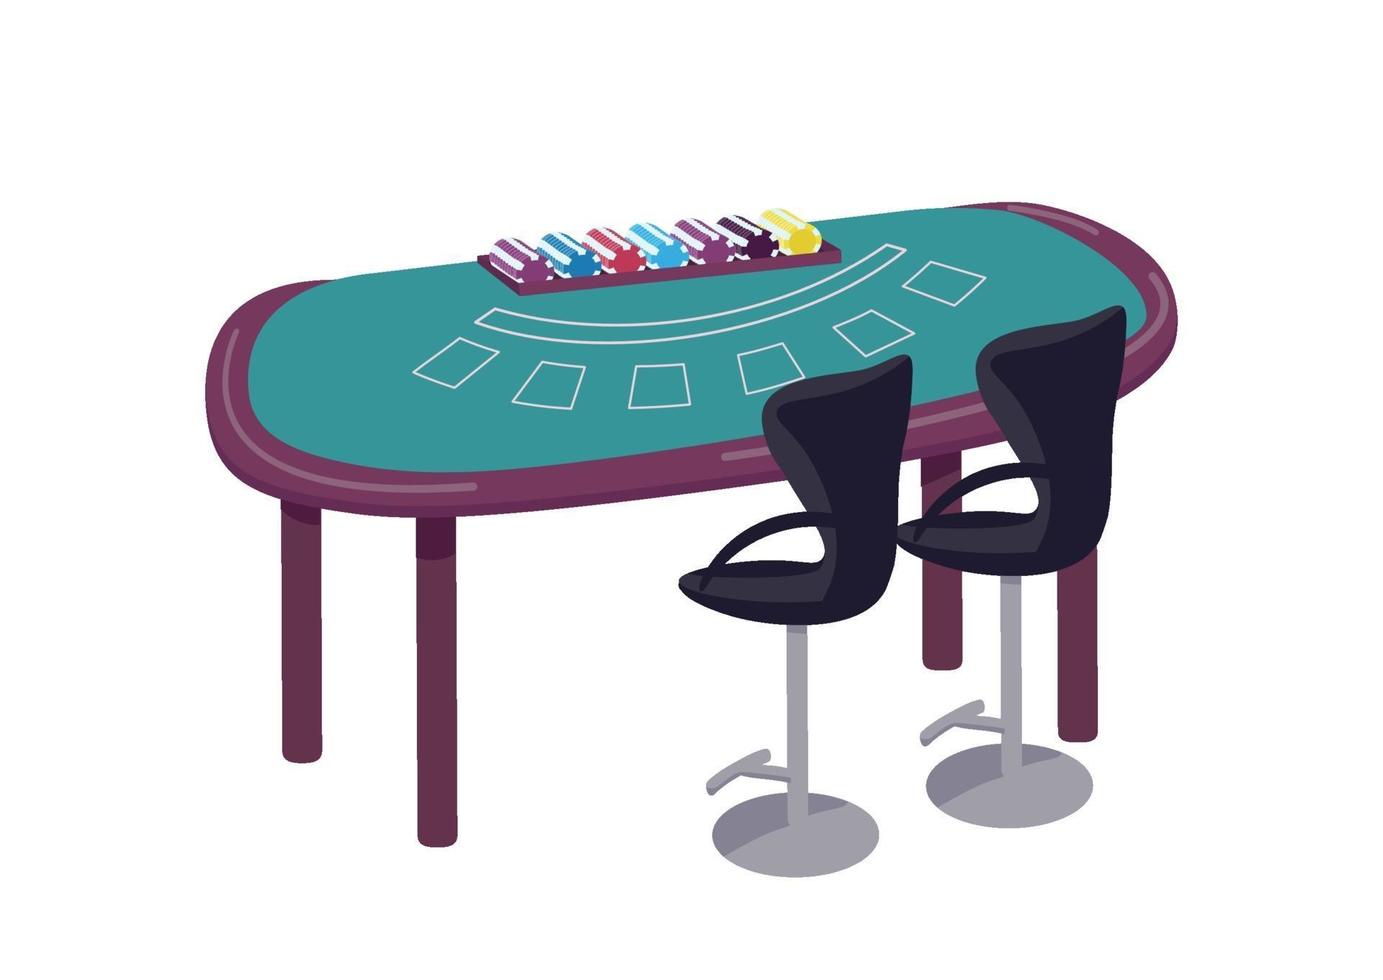 ilustração em vetor cassino dos desenhos animados. mesa verde para jogar o objeto de cor lisa de blackjack. mesa para jogar cartas e fazer apostas. contador para competição de jogos de azar isolado no fundo branco